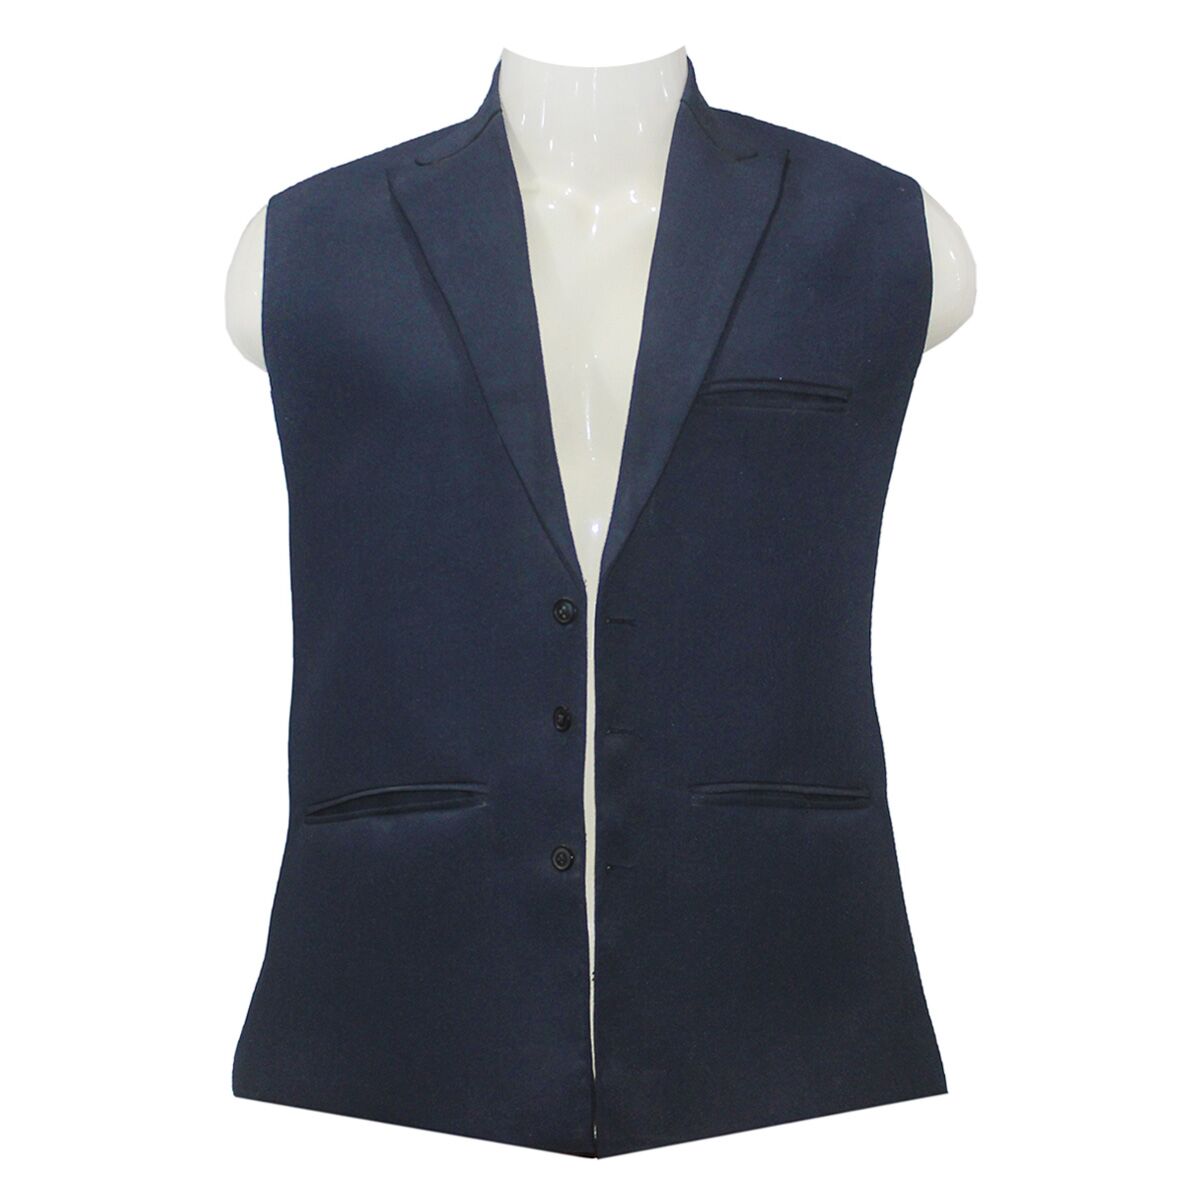 Buy Navy Blue Waistcoat | Peak Lapels Fancy Vest Online - Aseel